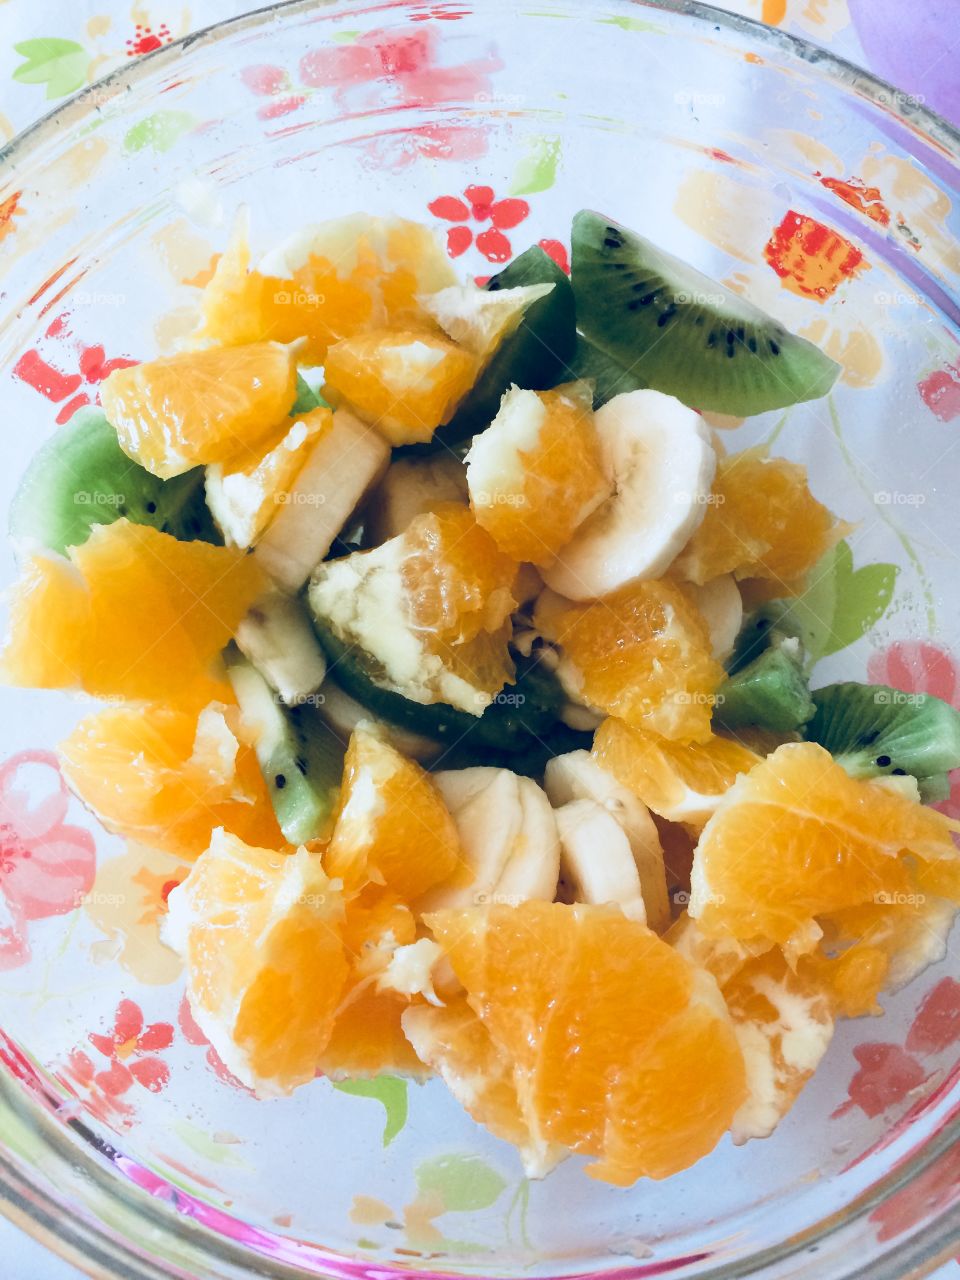 Fruit it’s always a good choice.